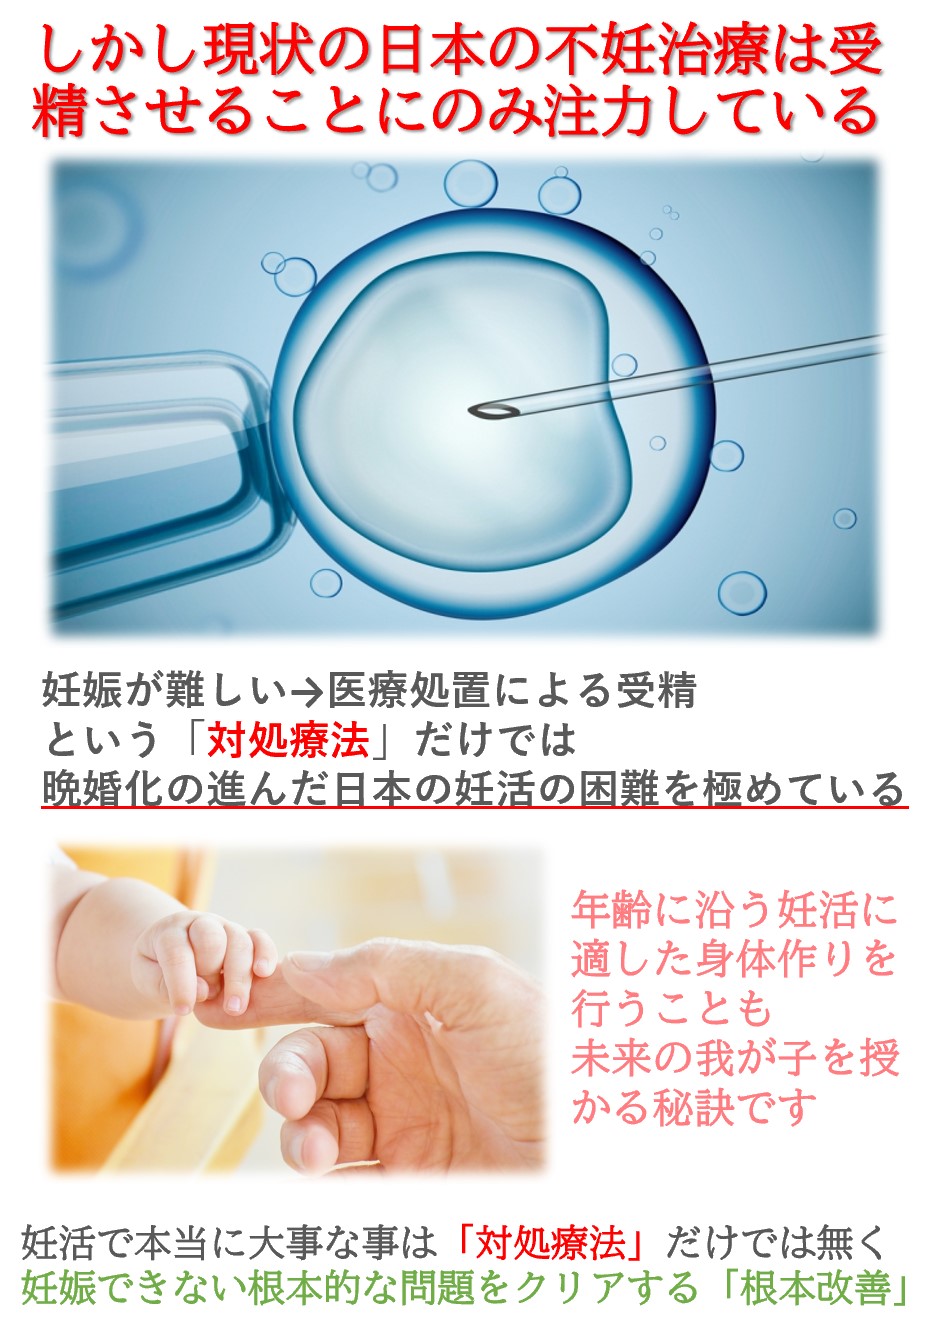 しかし、日本の不妊治療では父母の身体に対するケアは治療として行われません。だから受精卵は作れても着床し育むといった妊娠まで行かない方が多くおられるのです。